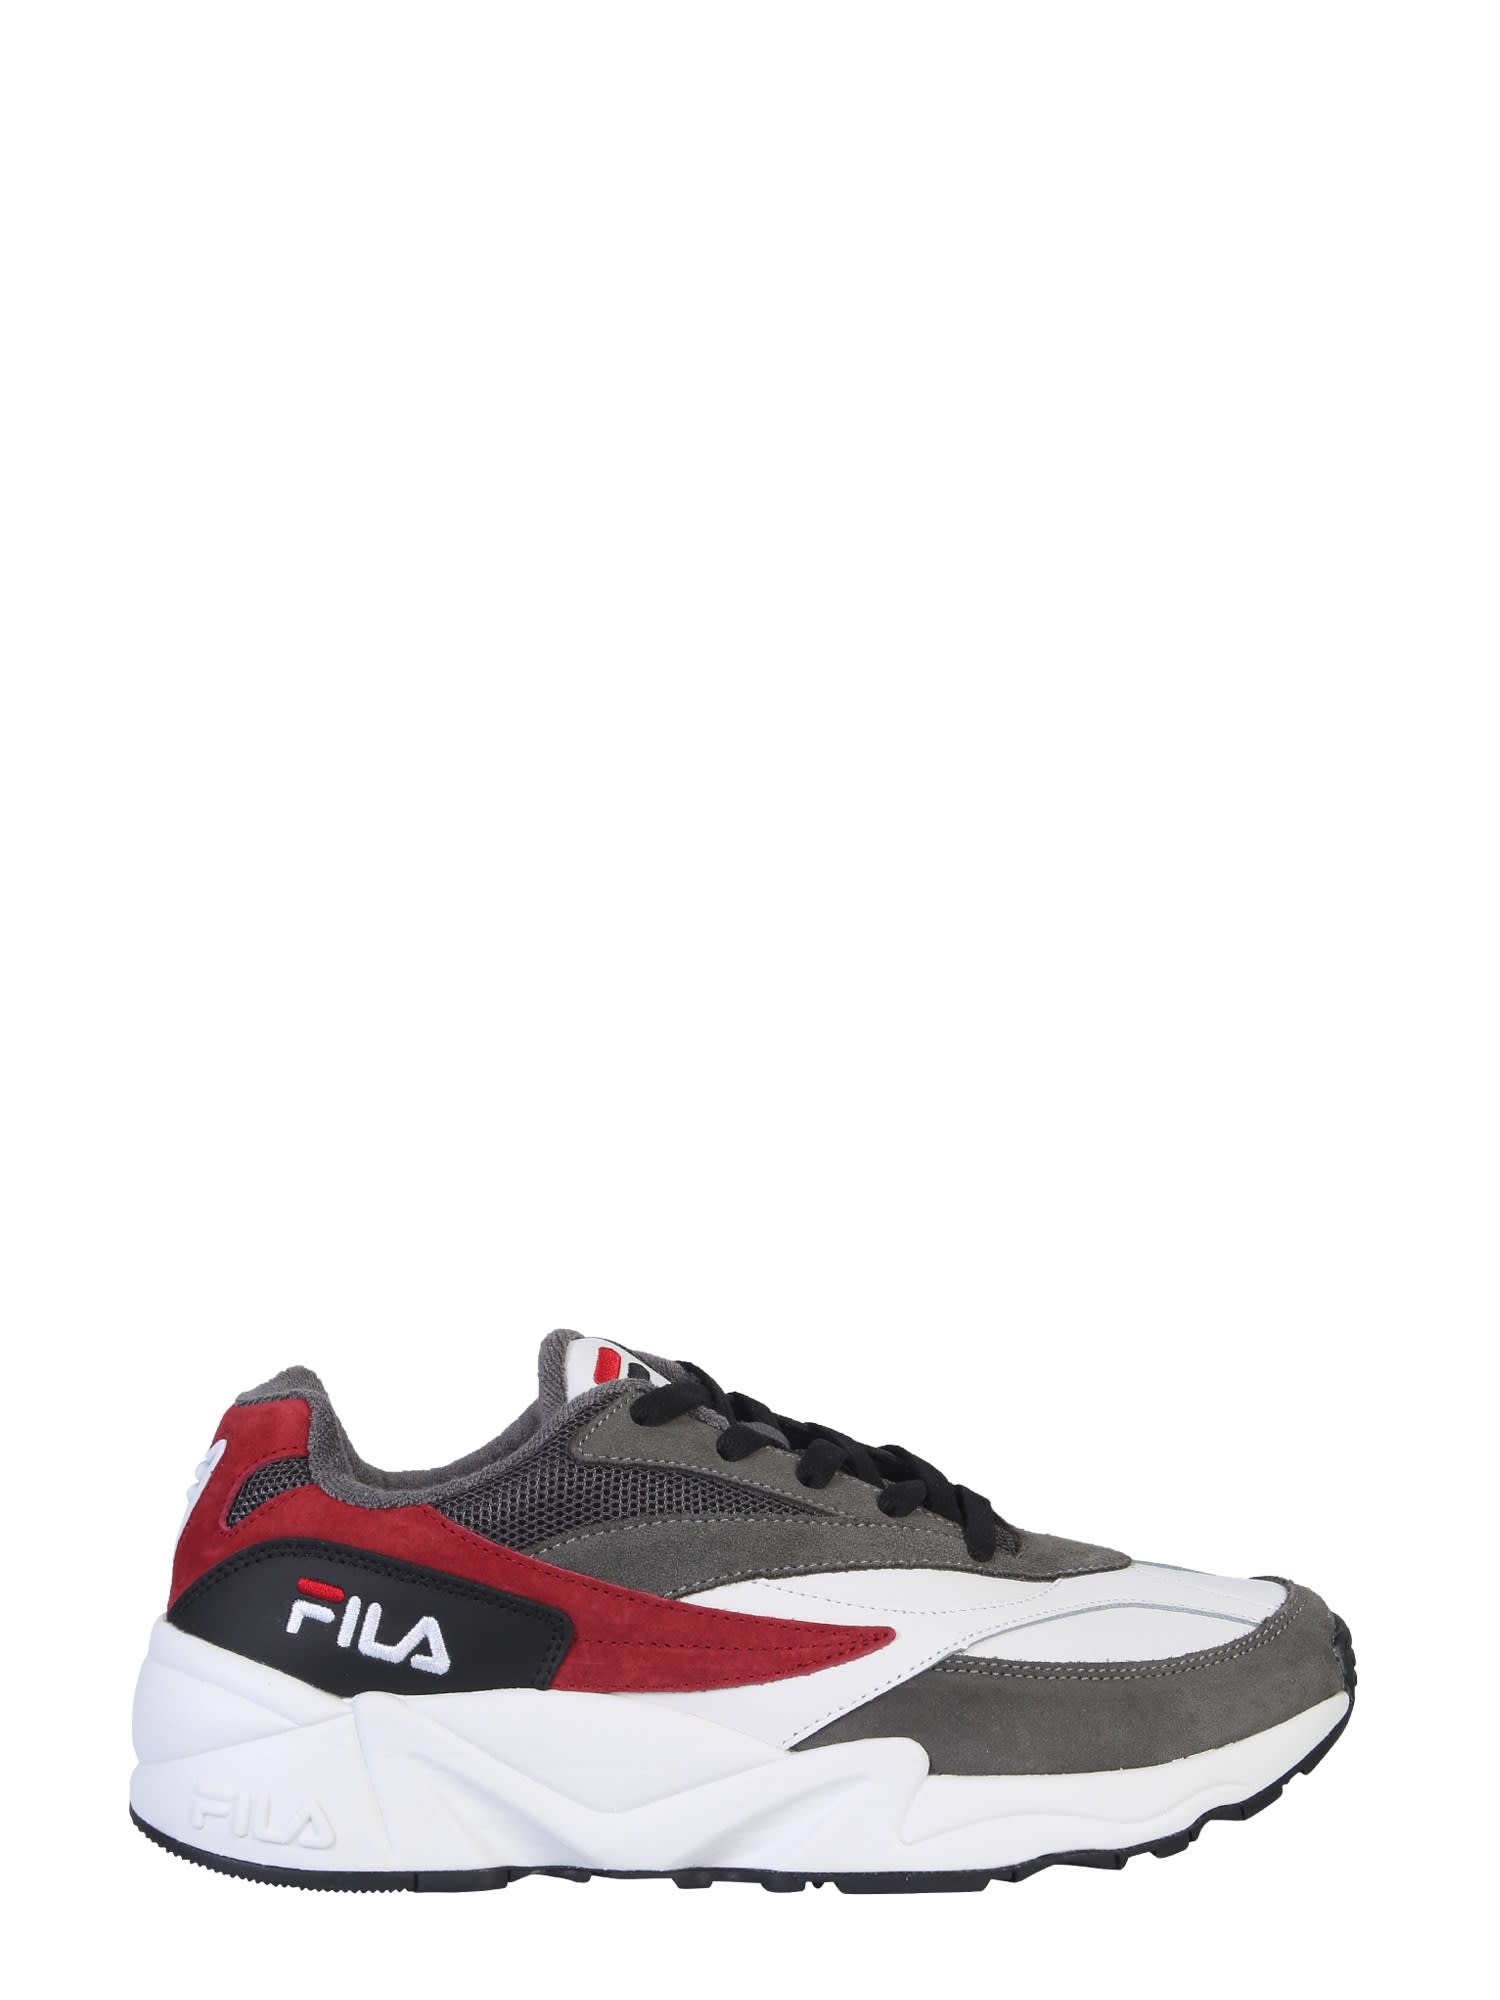 Fila V94m Low Sneaker